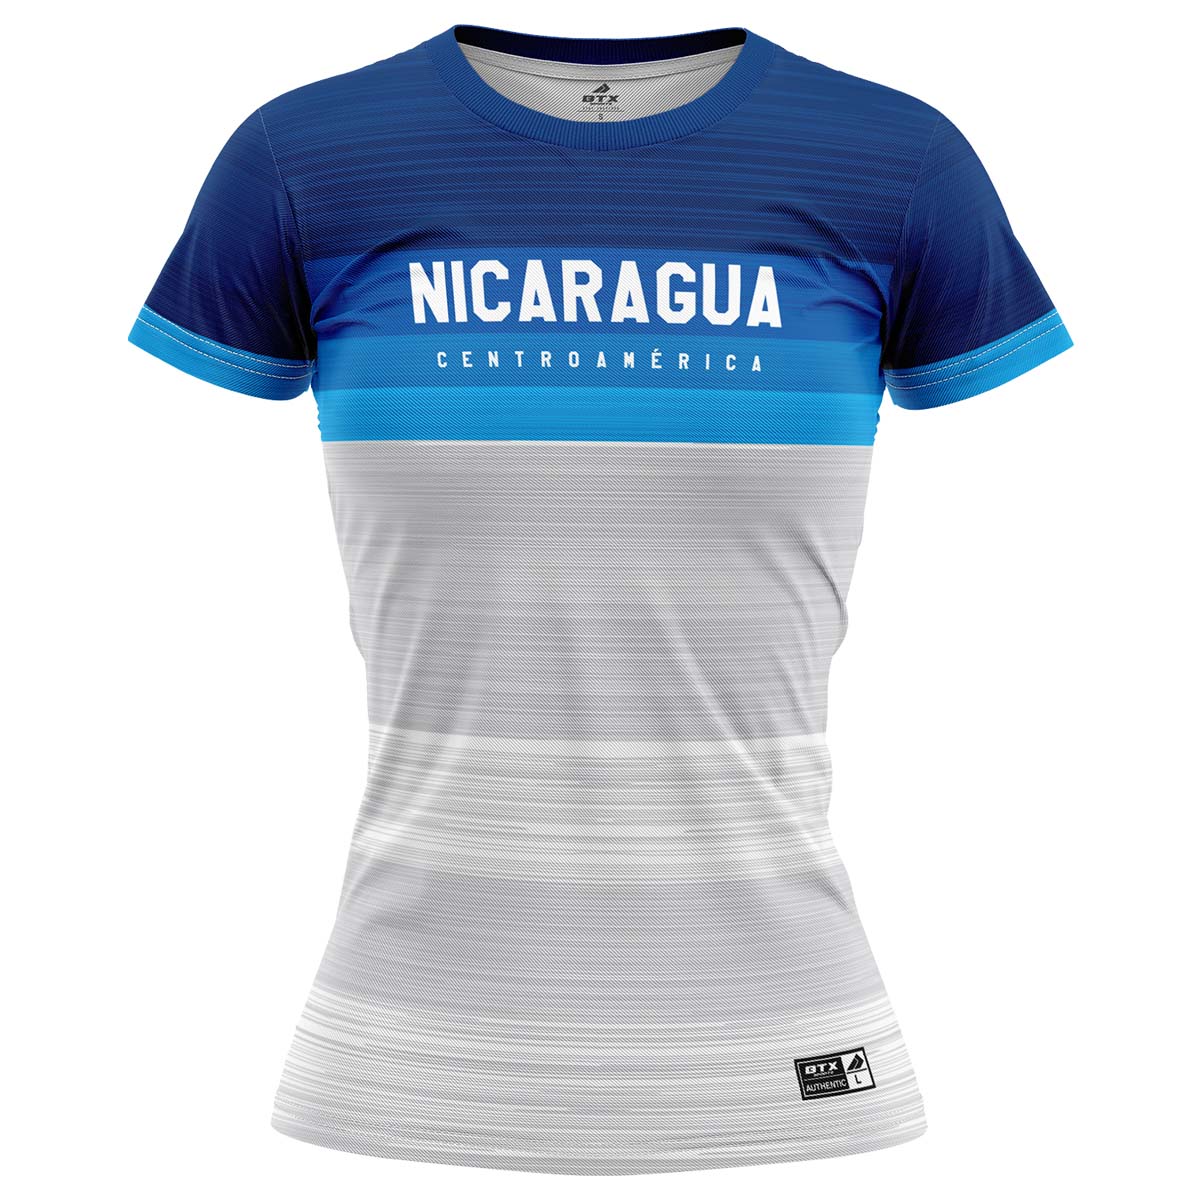 Camiseta Nicaragua Centroamérica azul dama